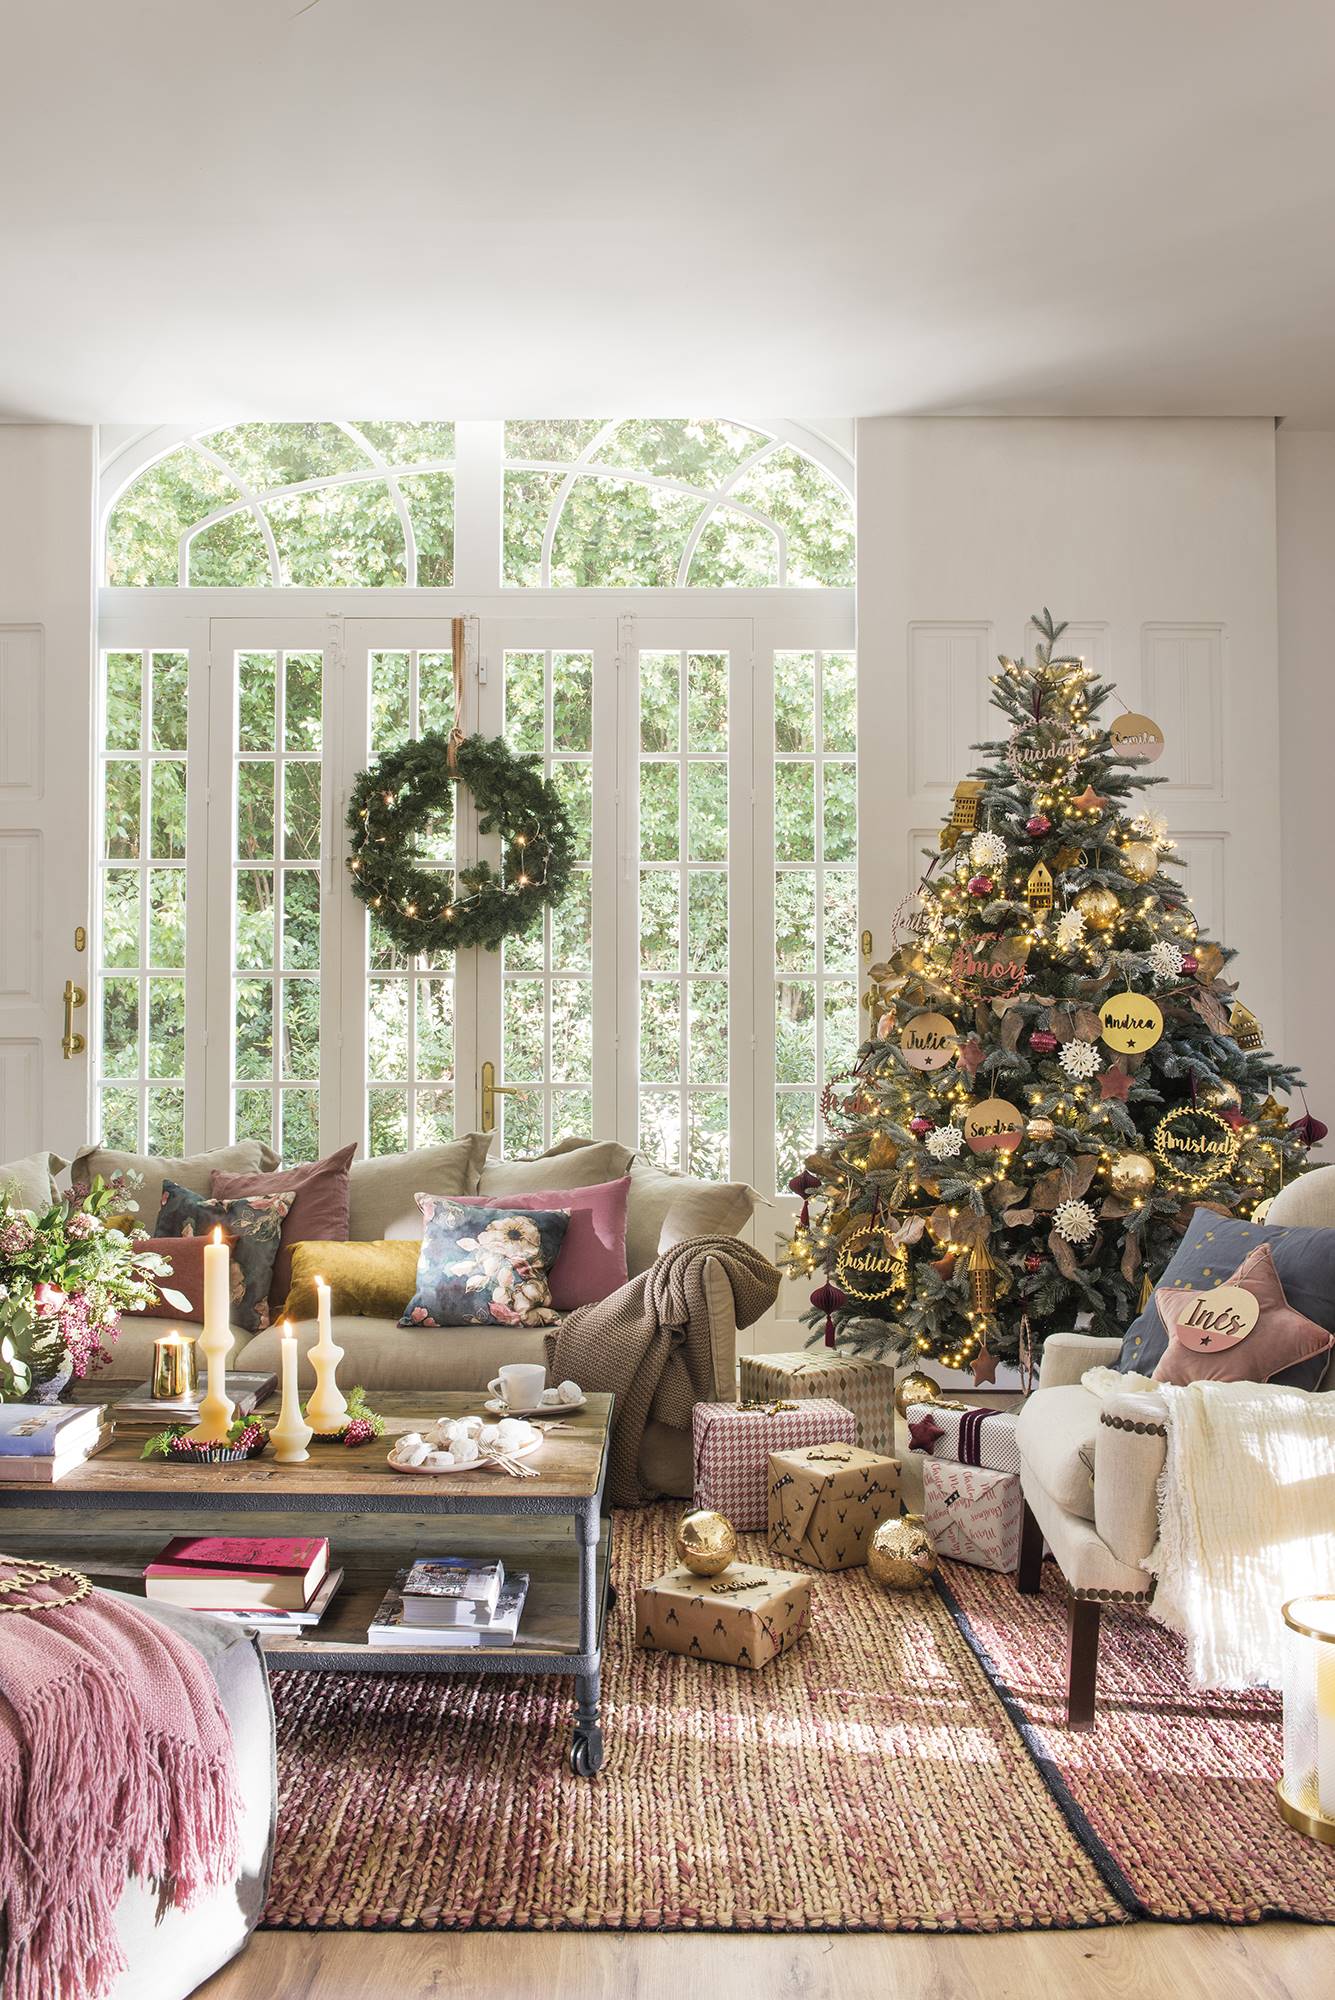 Căn nhà nổi bật với màu mận chín ấm áp, dịu dàng trang trí Giáng sinh - Ảnh 3.